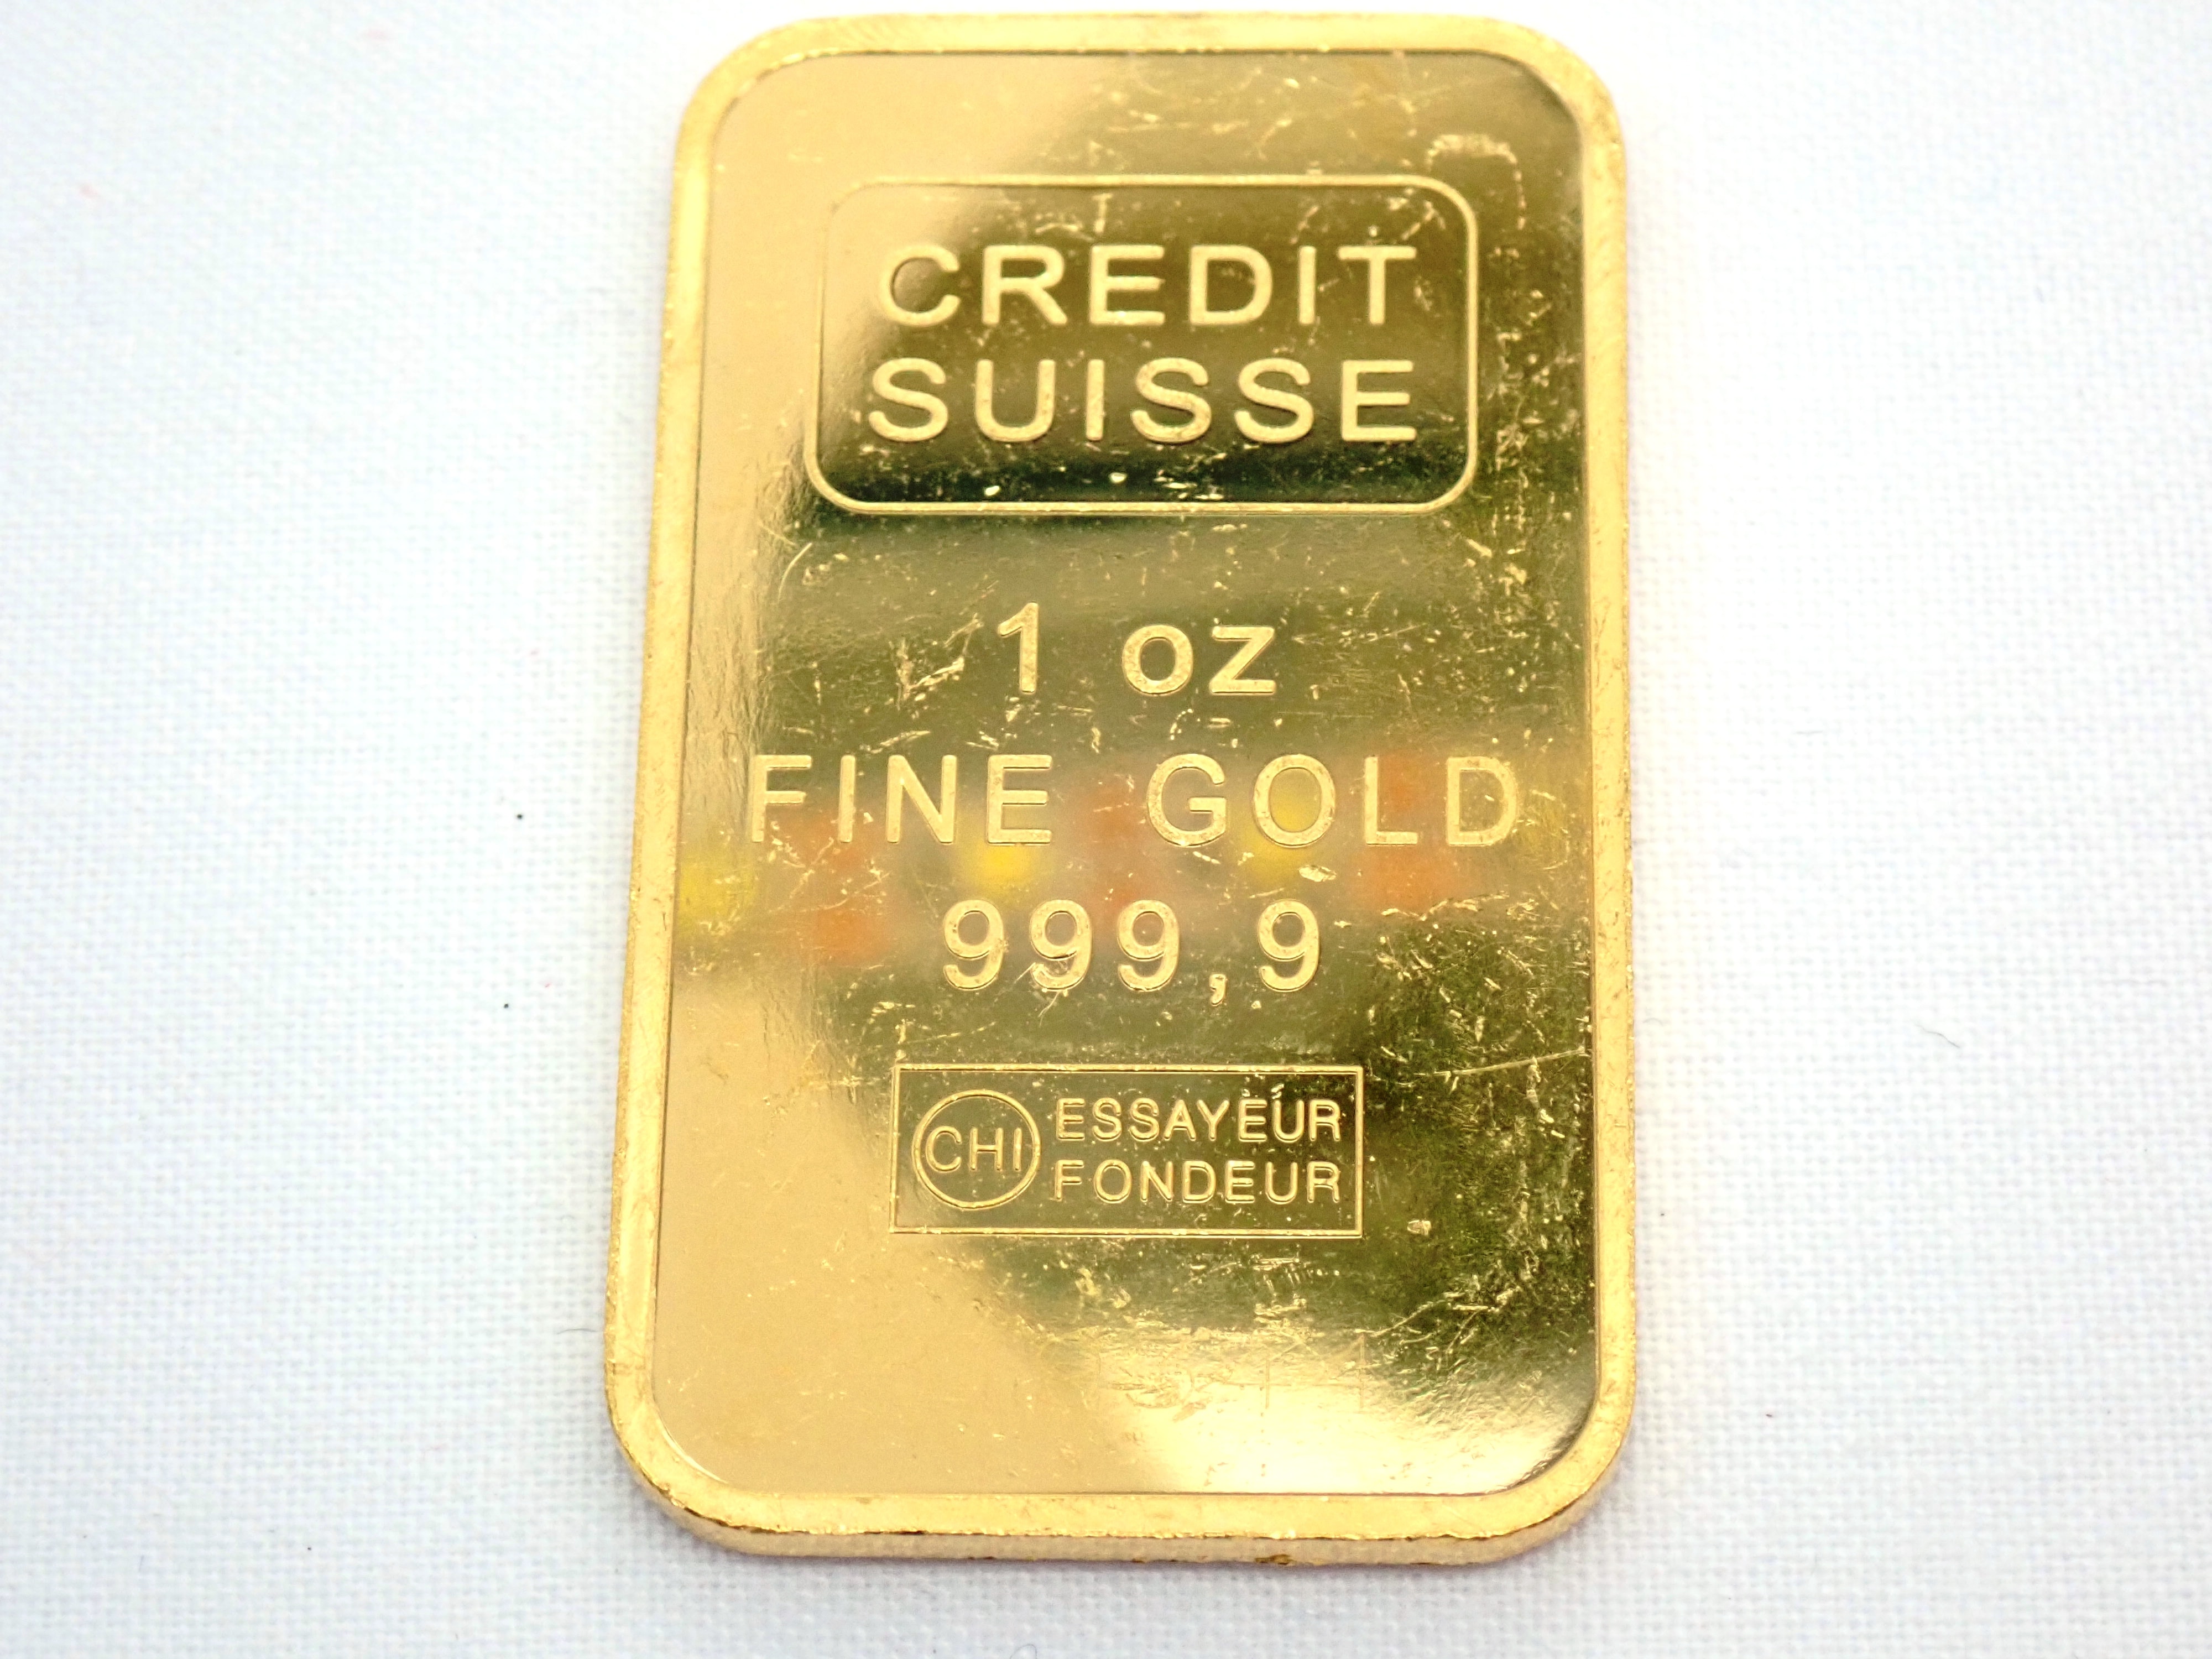 1 oz credit suisse gold bar eagle design